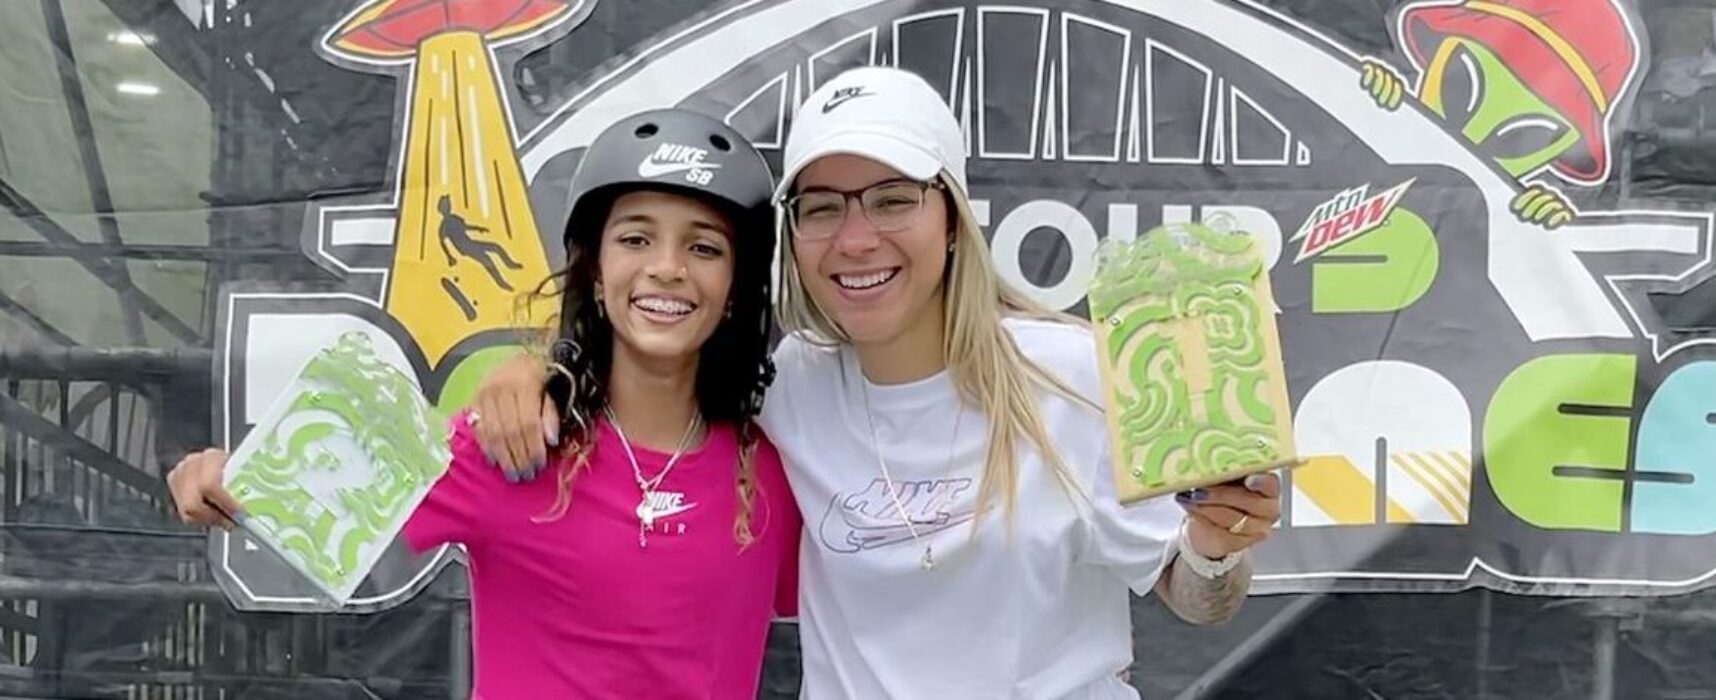 Skate: Brasil tem dobradinha nos EUA e definição de vagas olímpicas